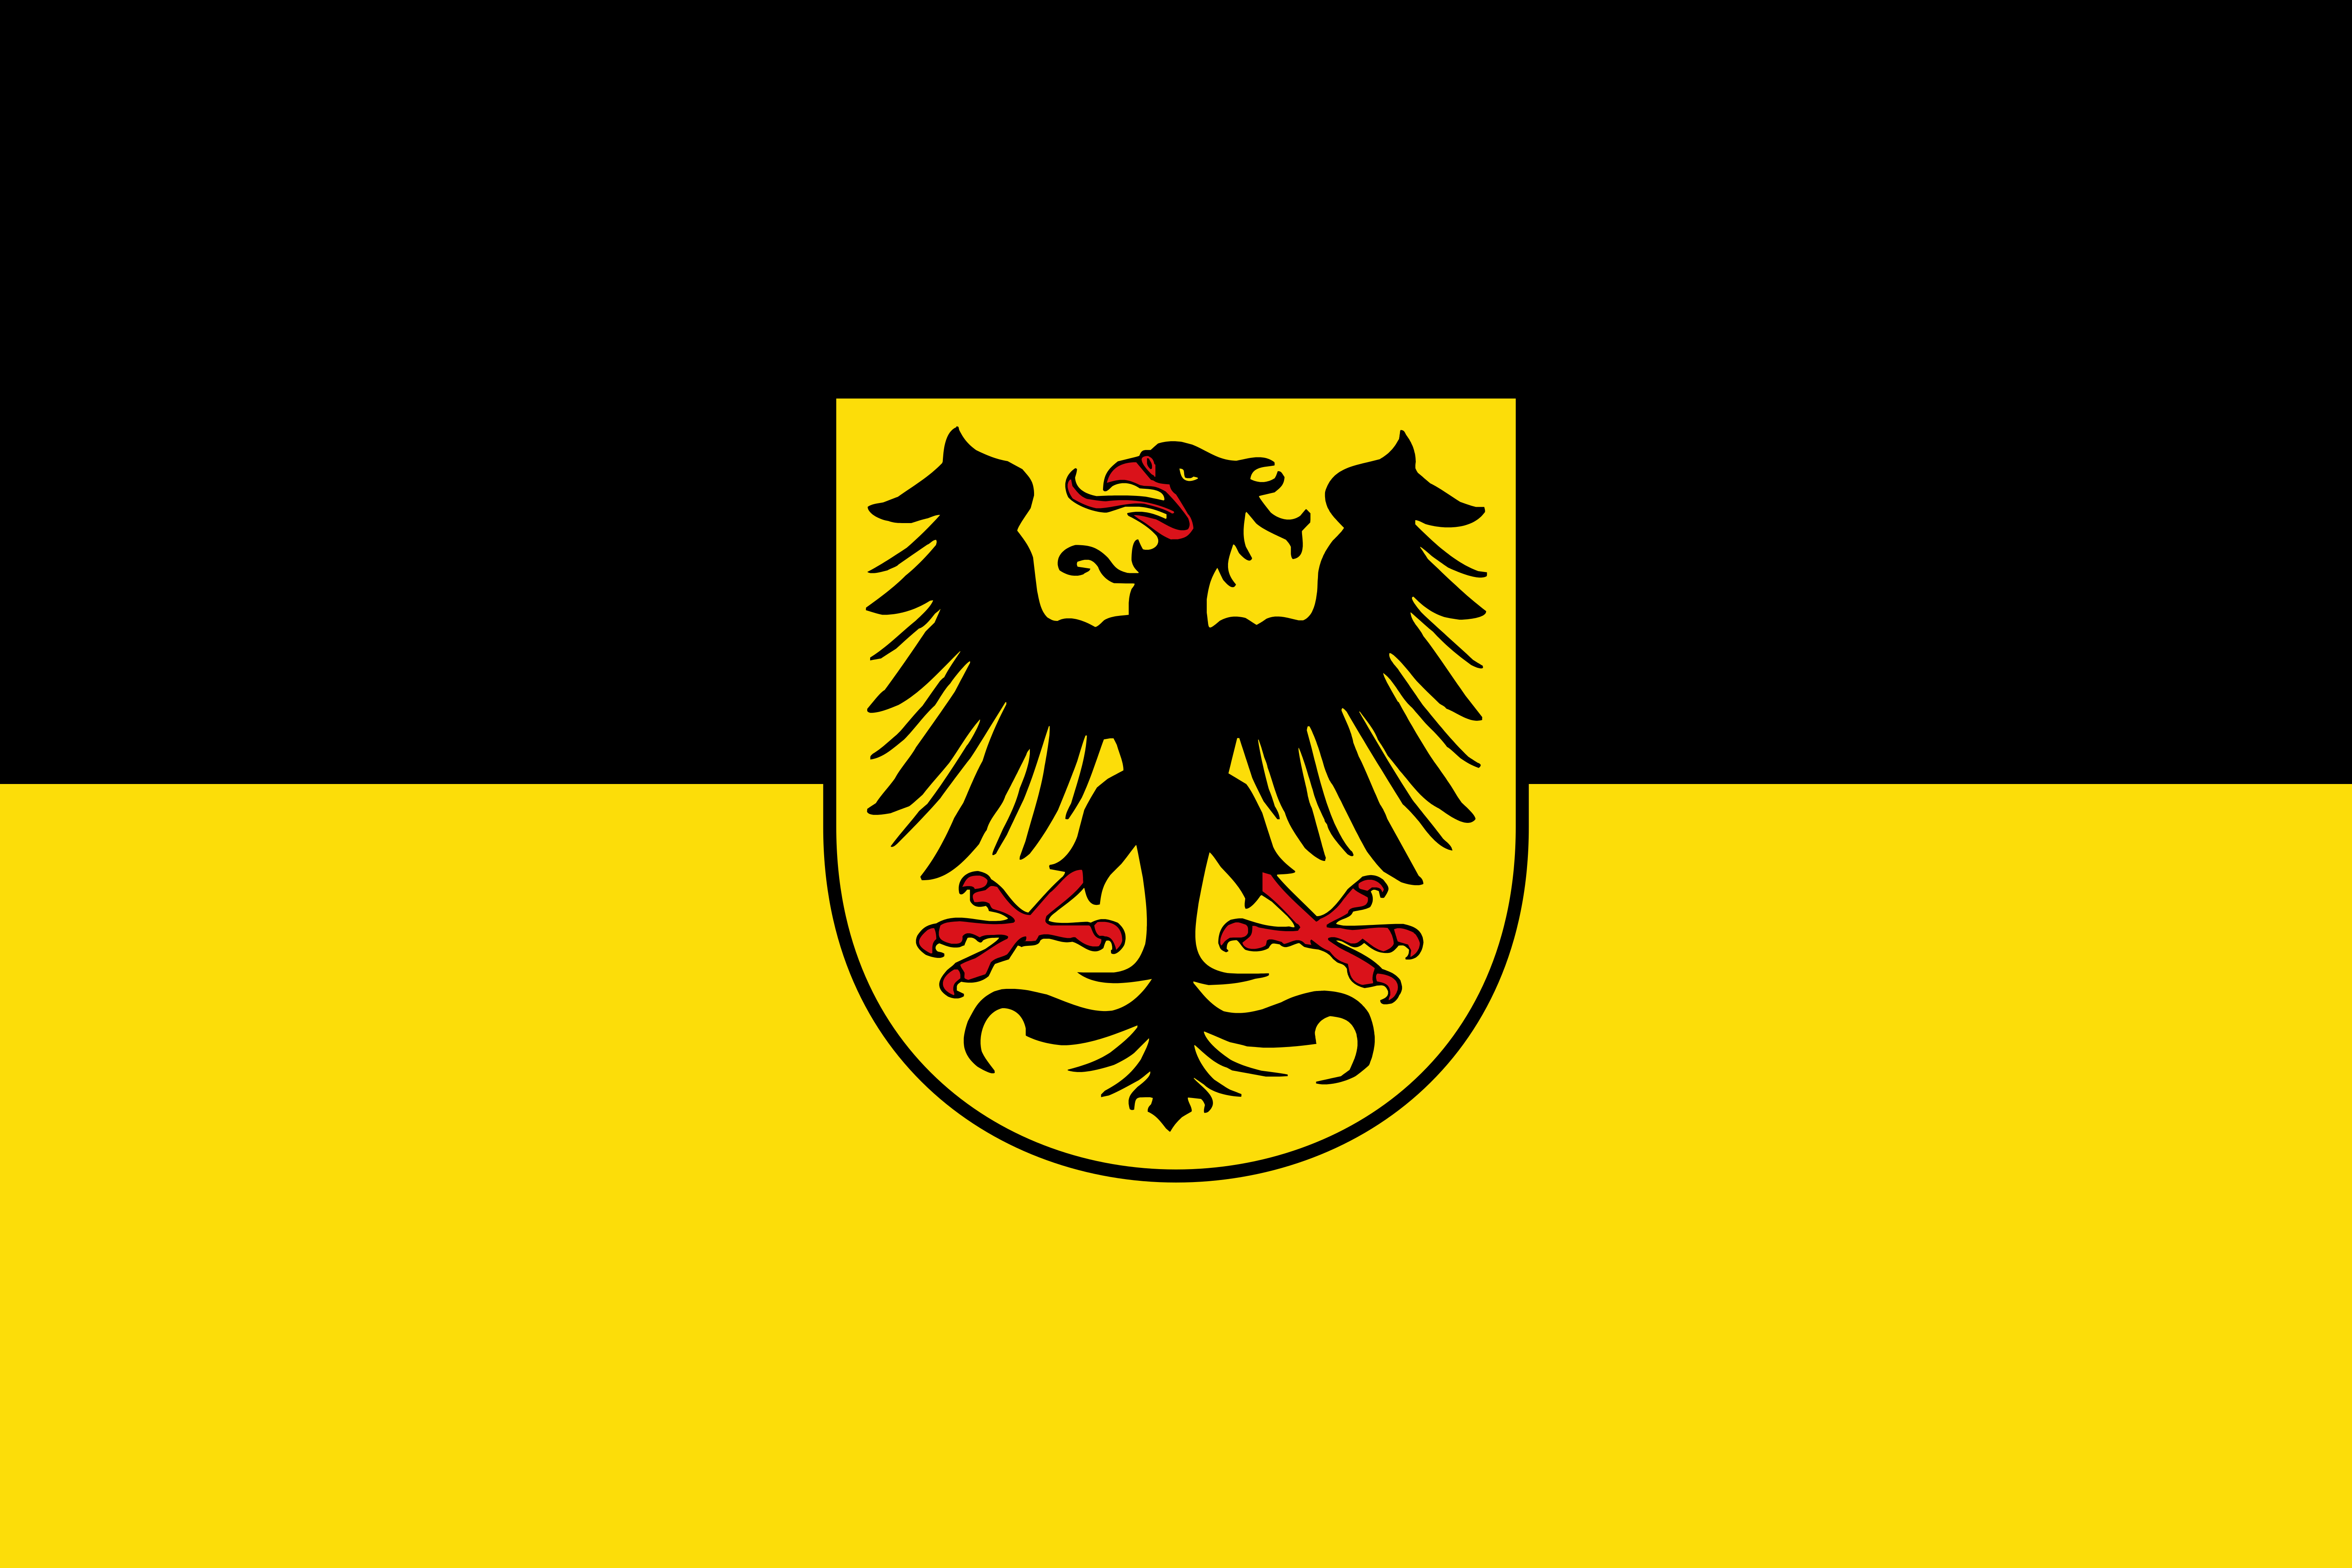 Hissflagge der Stadt Arnstadt